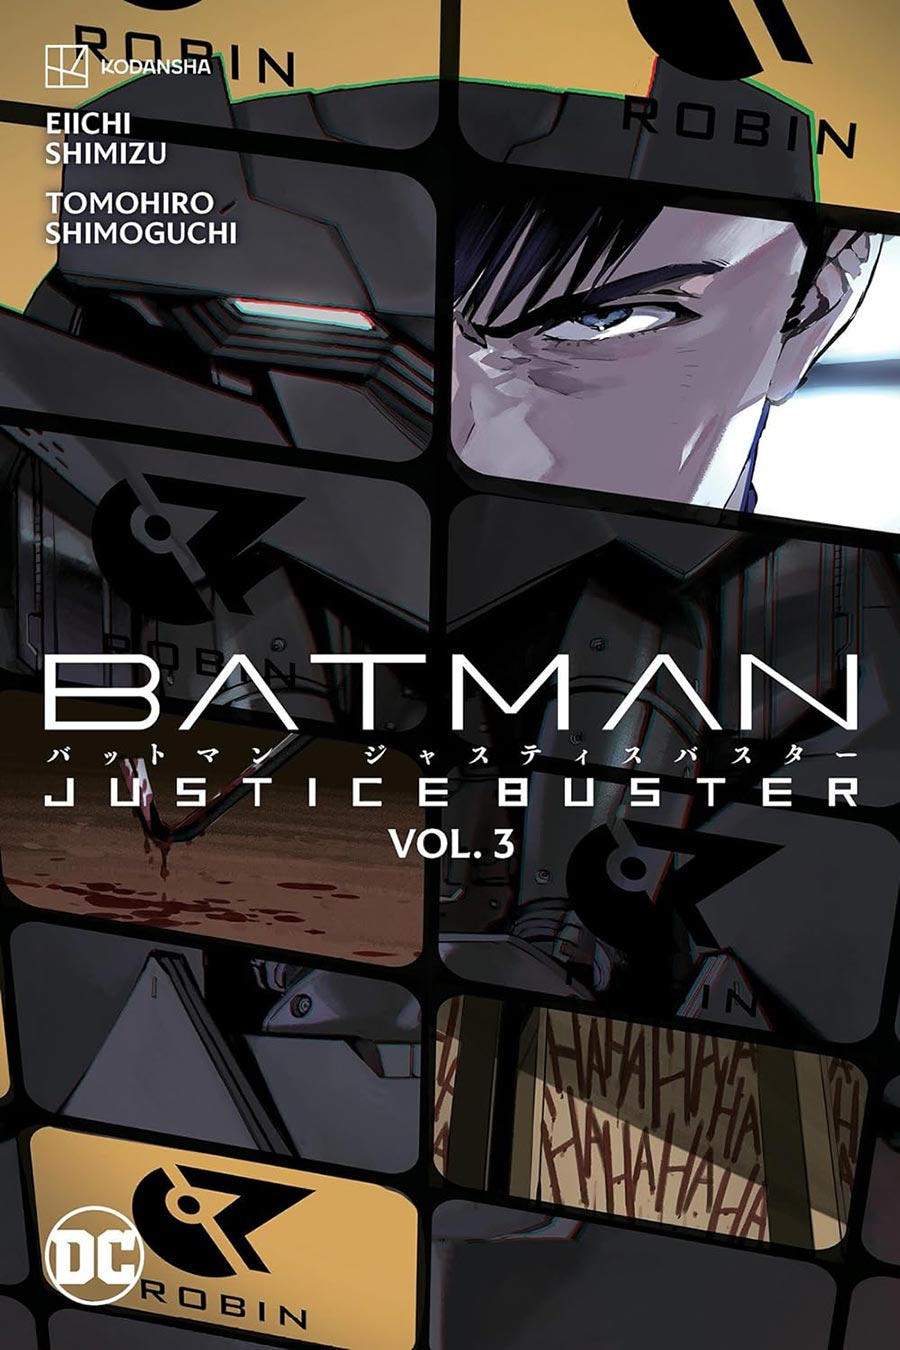 Batman Justice Buster Vol 3 TP